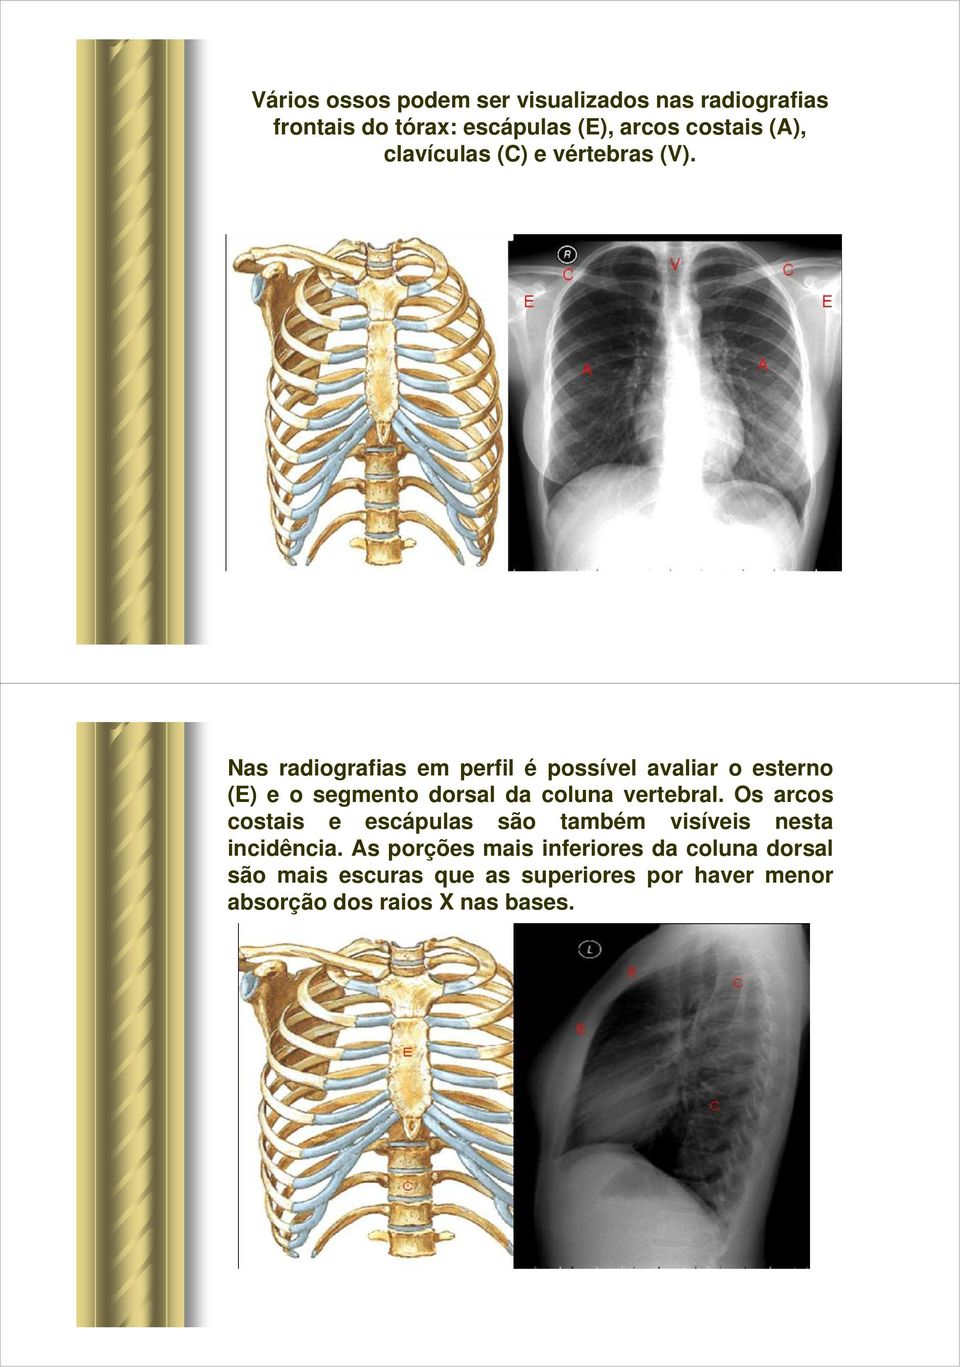 Nas radiografias em perfil é possível avaliar o esterno (E) e o segmento dorsal da coluna vertebral.